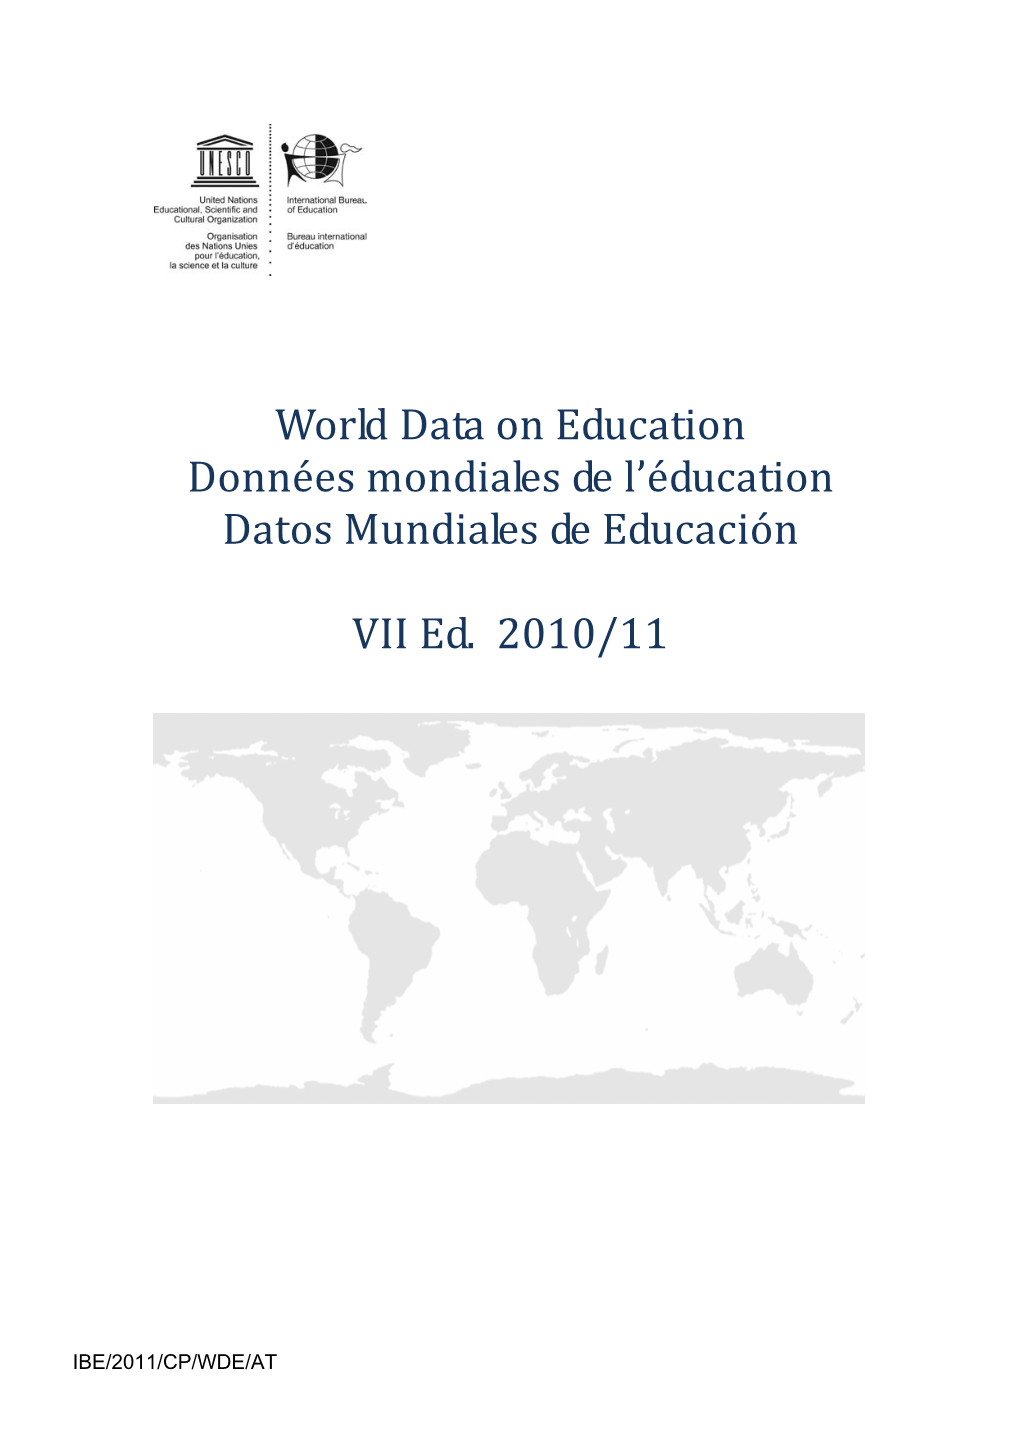 Australia; World Data on Education, 2010/11; 2011